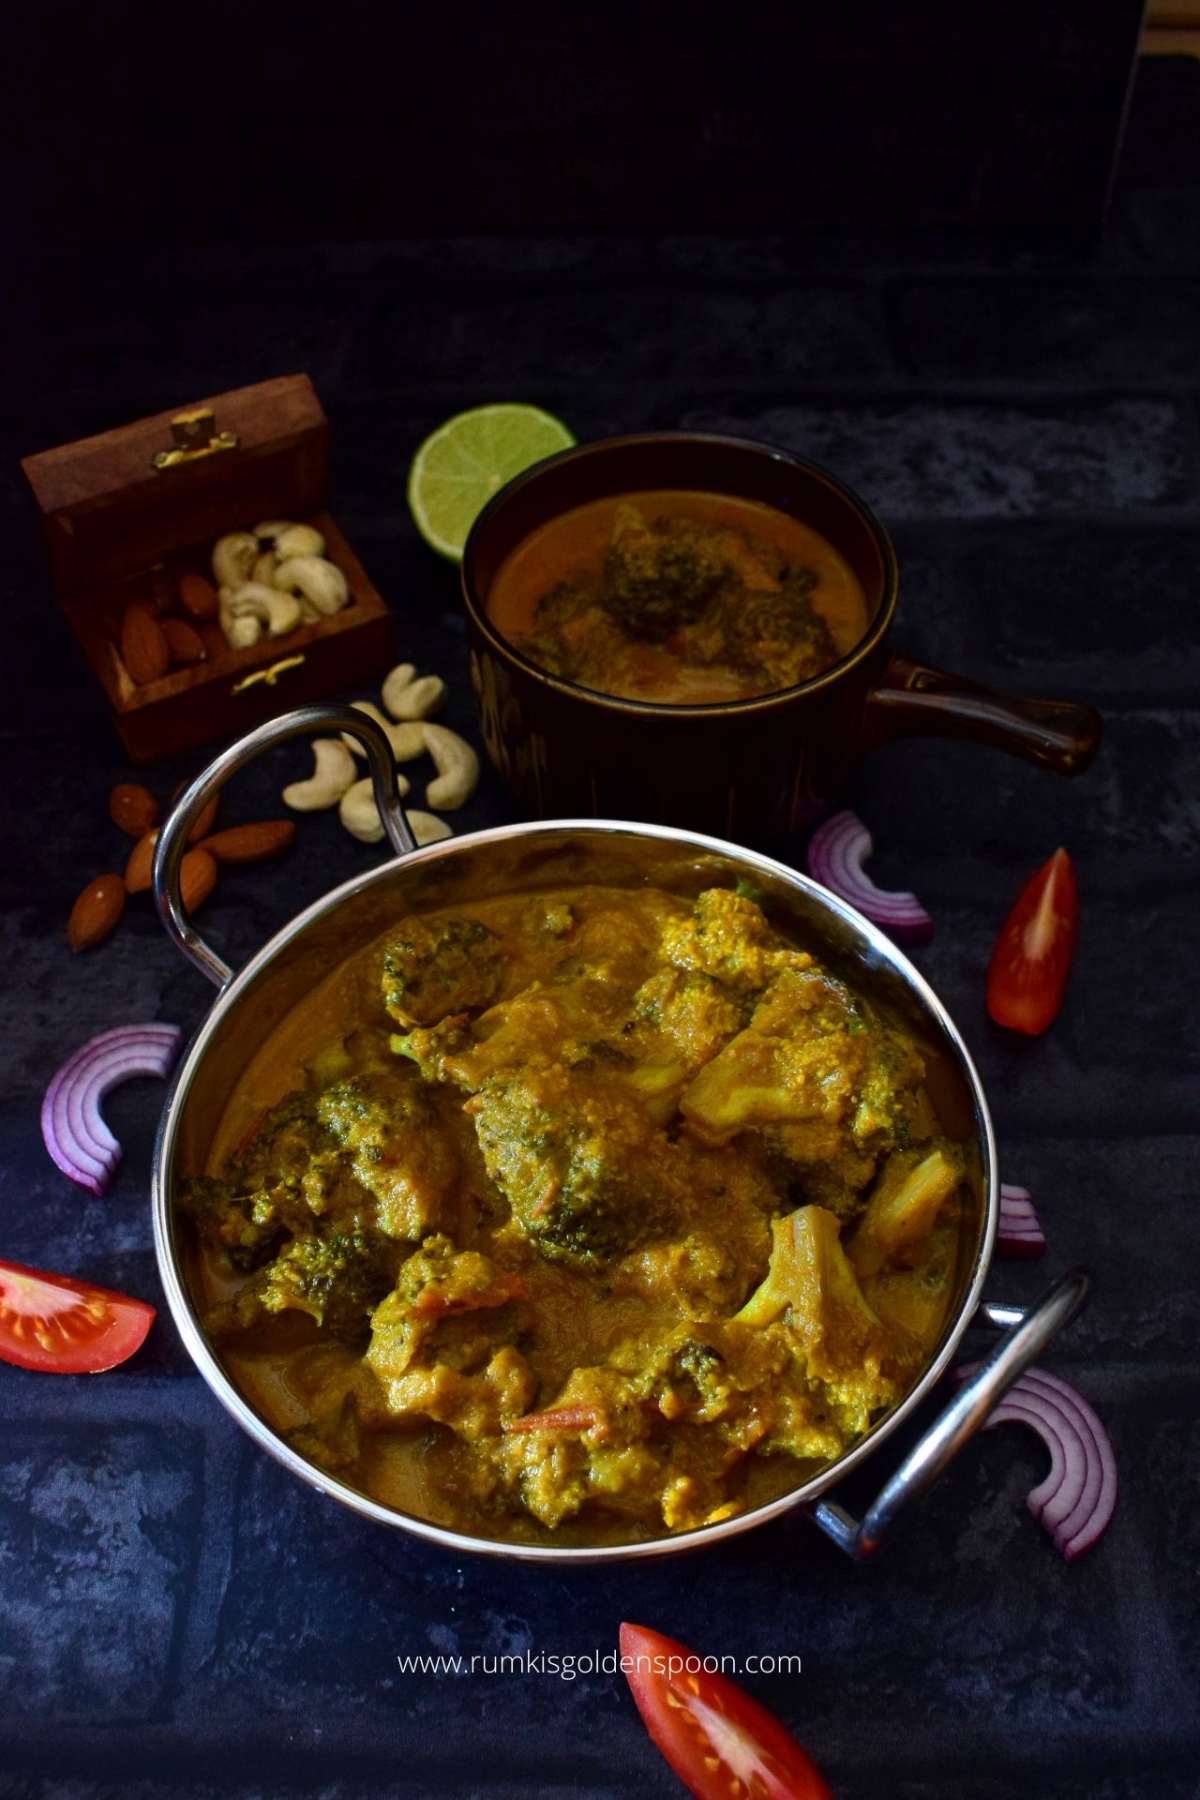 Shahi Broccoli, broccoli curry, broccoli curry Indian, broccoli curry recipe, recipe for broccoli curry, recipe of broccoli curry, recipe with broccoli curry, broccoli curry Indian recipe, broccoli curry recipe Indian, broccoli recipe vegetarian, broccoli recipe Indian, broccoli in Indian recipes, Indian recipe with broccoli, Indian recipe of broccoli, Indian recipe for broccoli, broccoli recipe Indian Style, broccoli ki sabzi, benefits of broccoli, how to make broccoli sabzi, Vegetarian recipes in India, Indian curry, Indian curry recipe, Cashew nut curry, Rumki's Golden Spoon